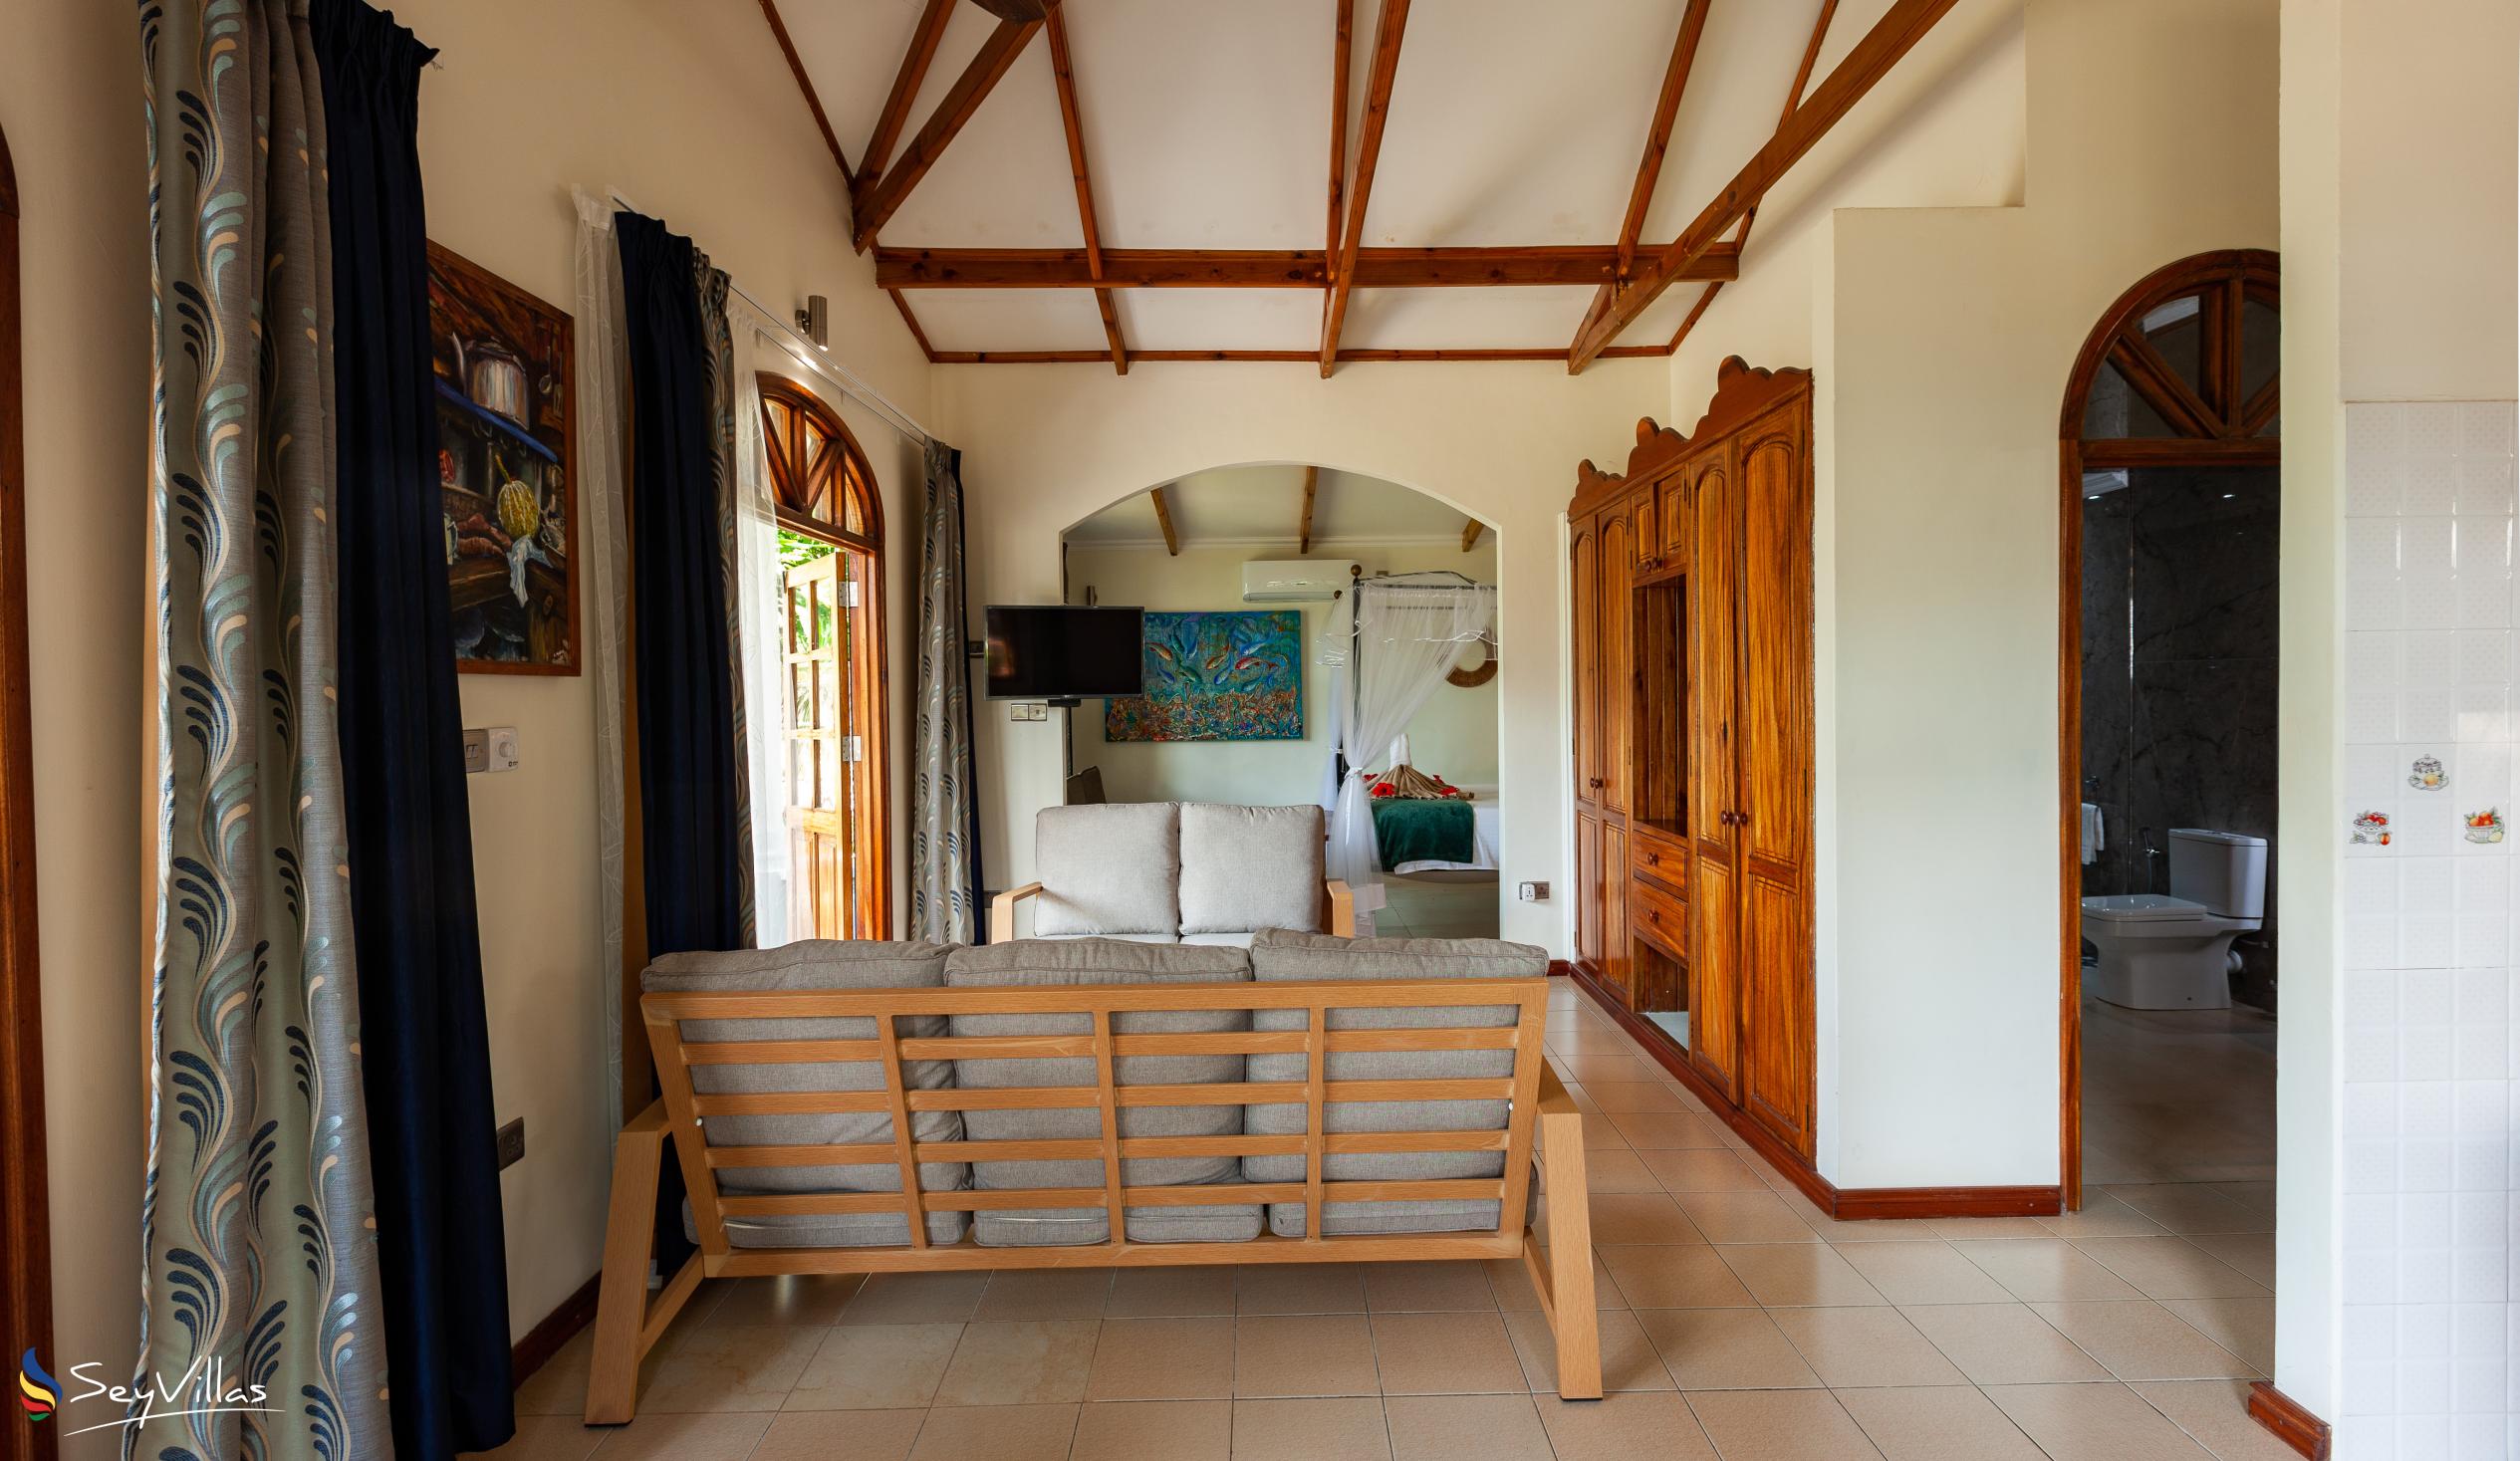 Photo 17: La Petite Maison - Villa with Private Pool - Praslin (Seychelles)